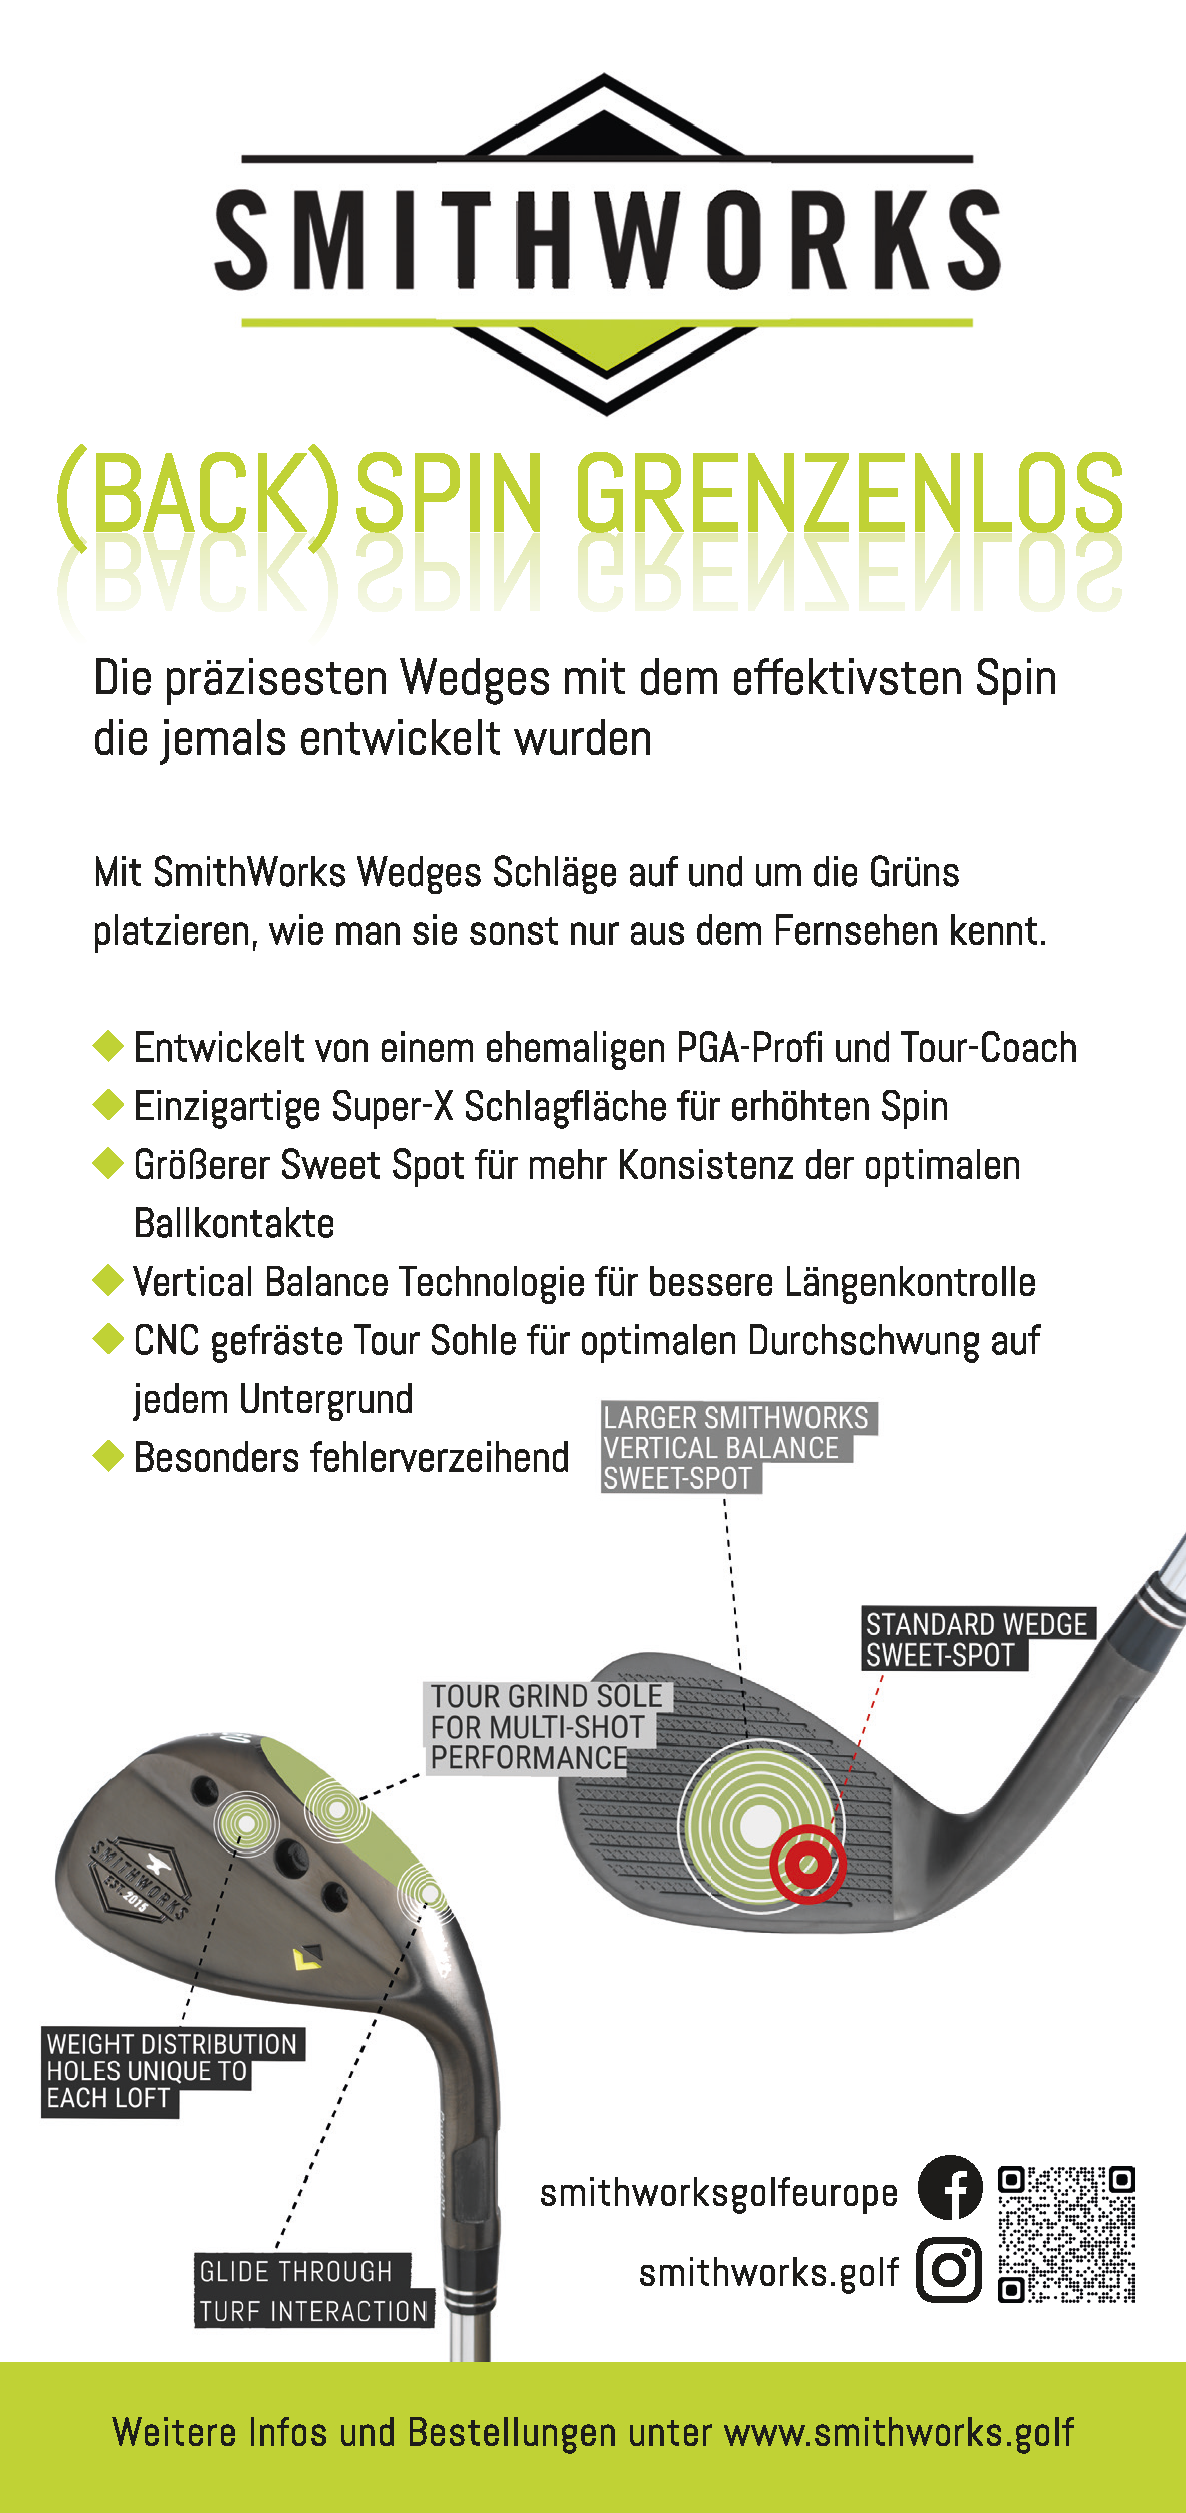 Das Bild zeigt den Putter Flyer in deutscher Sprache